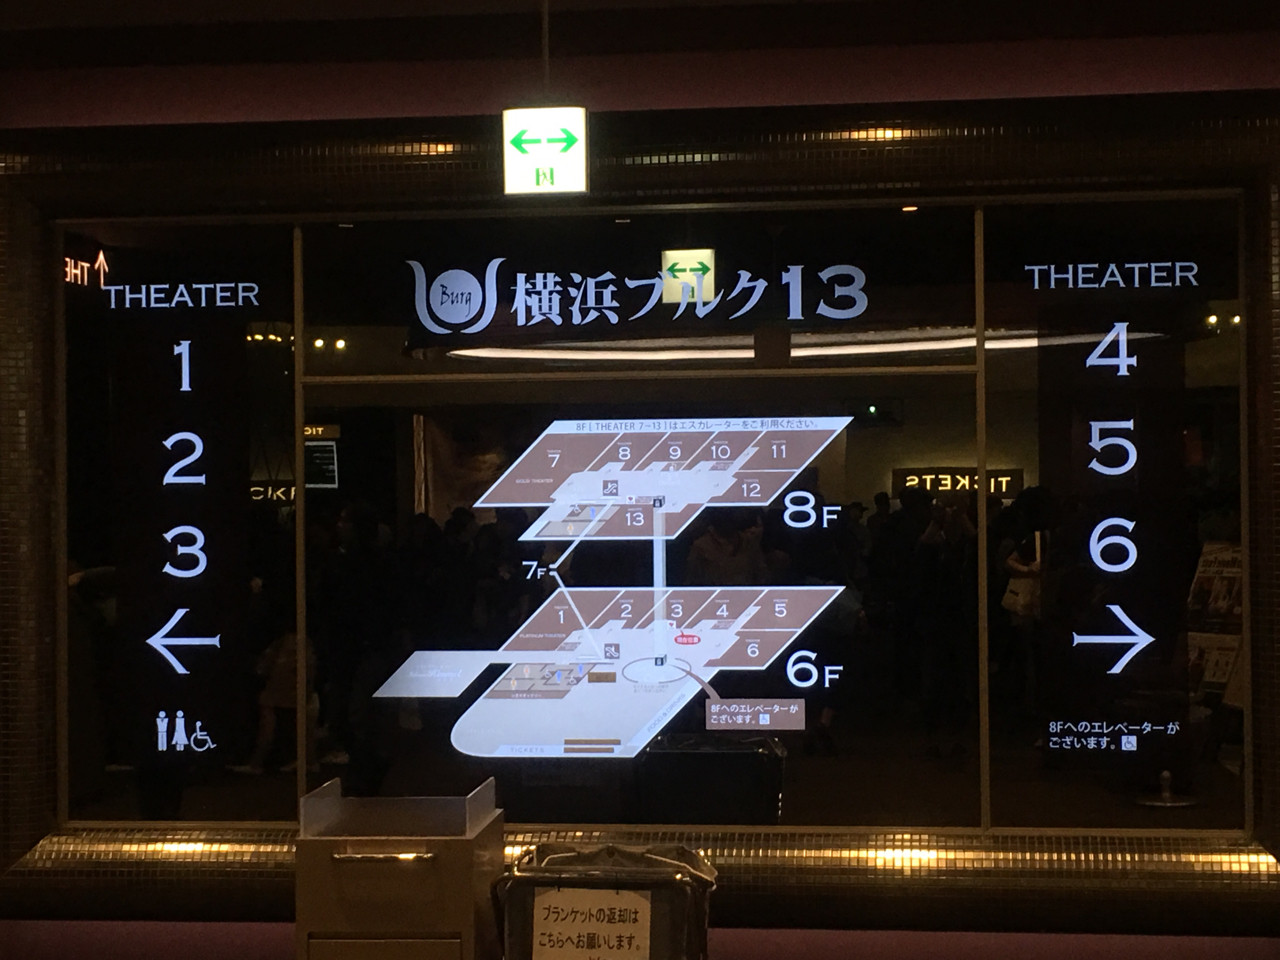 桜木町駅前の映画館 横浜ブルク13 はフードレジのオペレーションを改善した方がいい め んずスタジオ